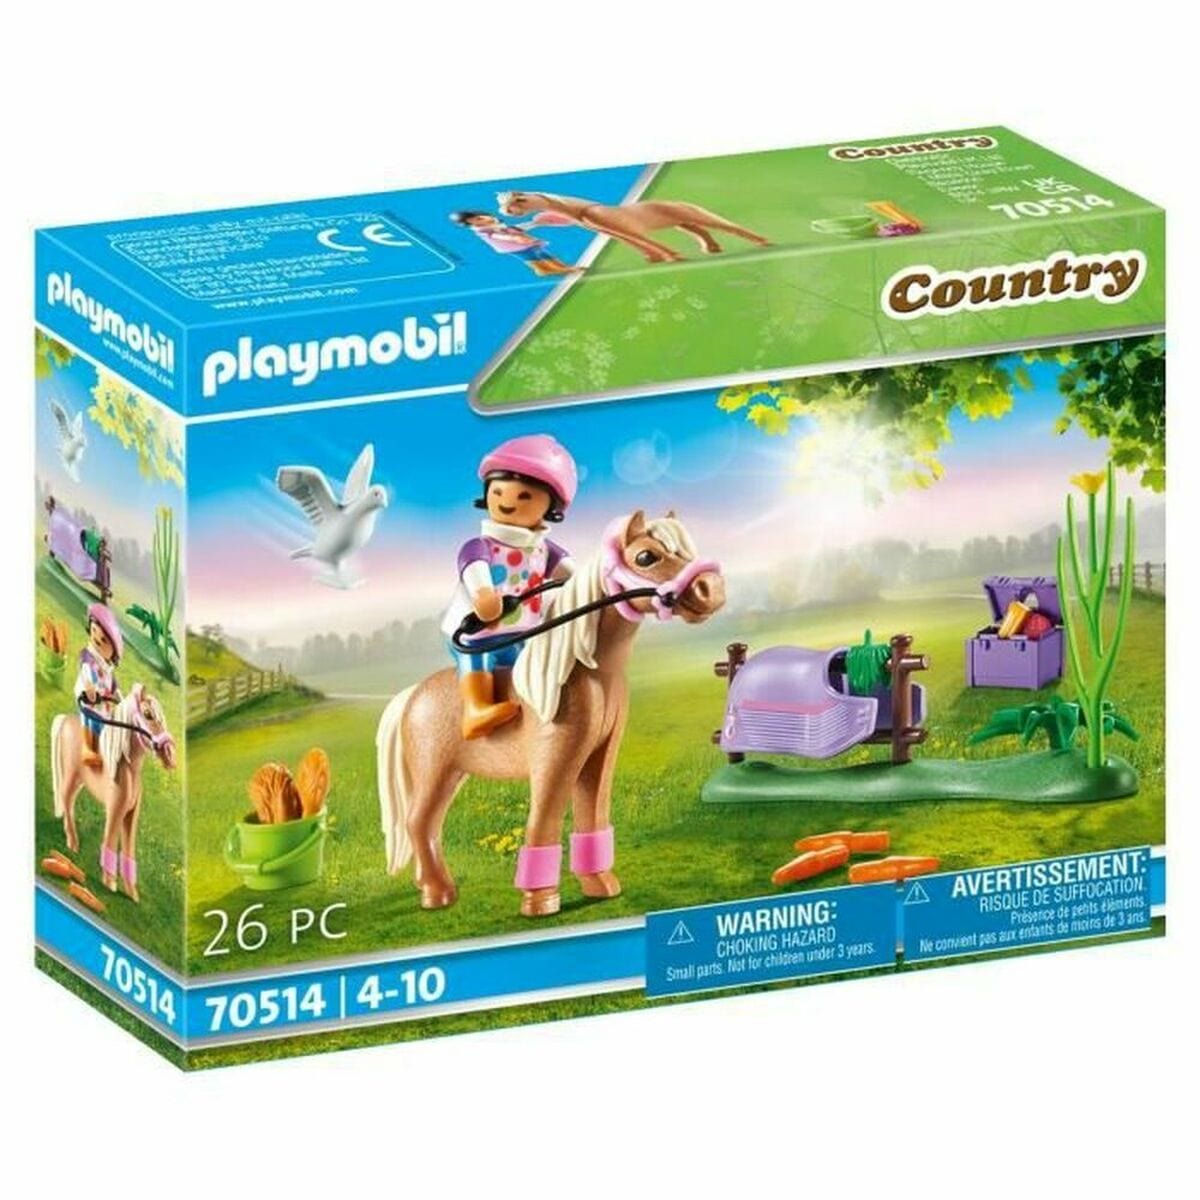 Playmobil Spielzeug | Kostüme > Spielzeug und Spiele > Weiteres spielzeug Playset Playmobil Country 70514 26 Stücke